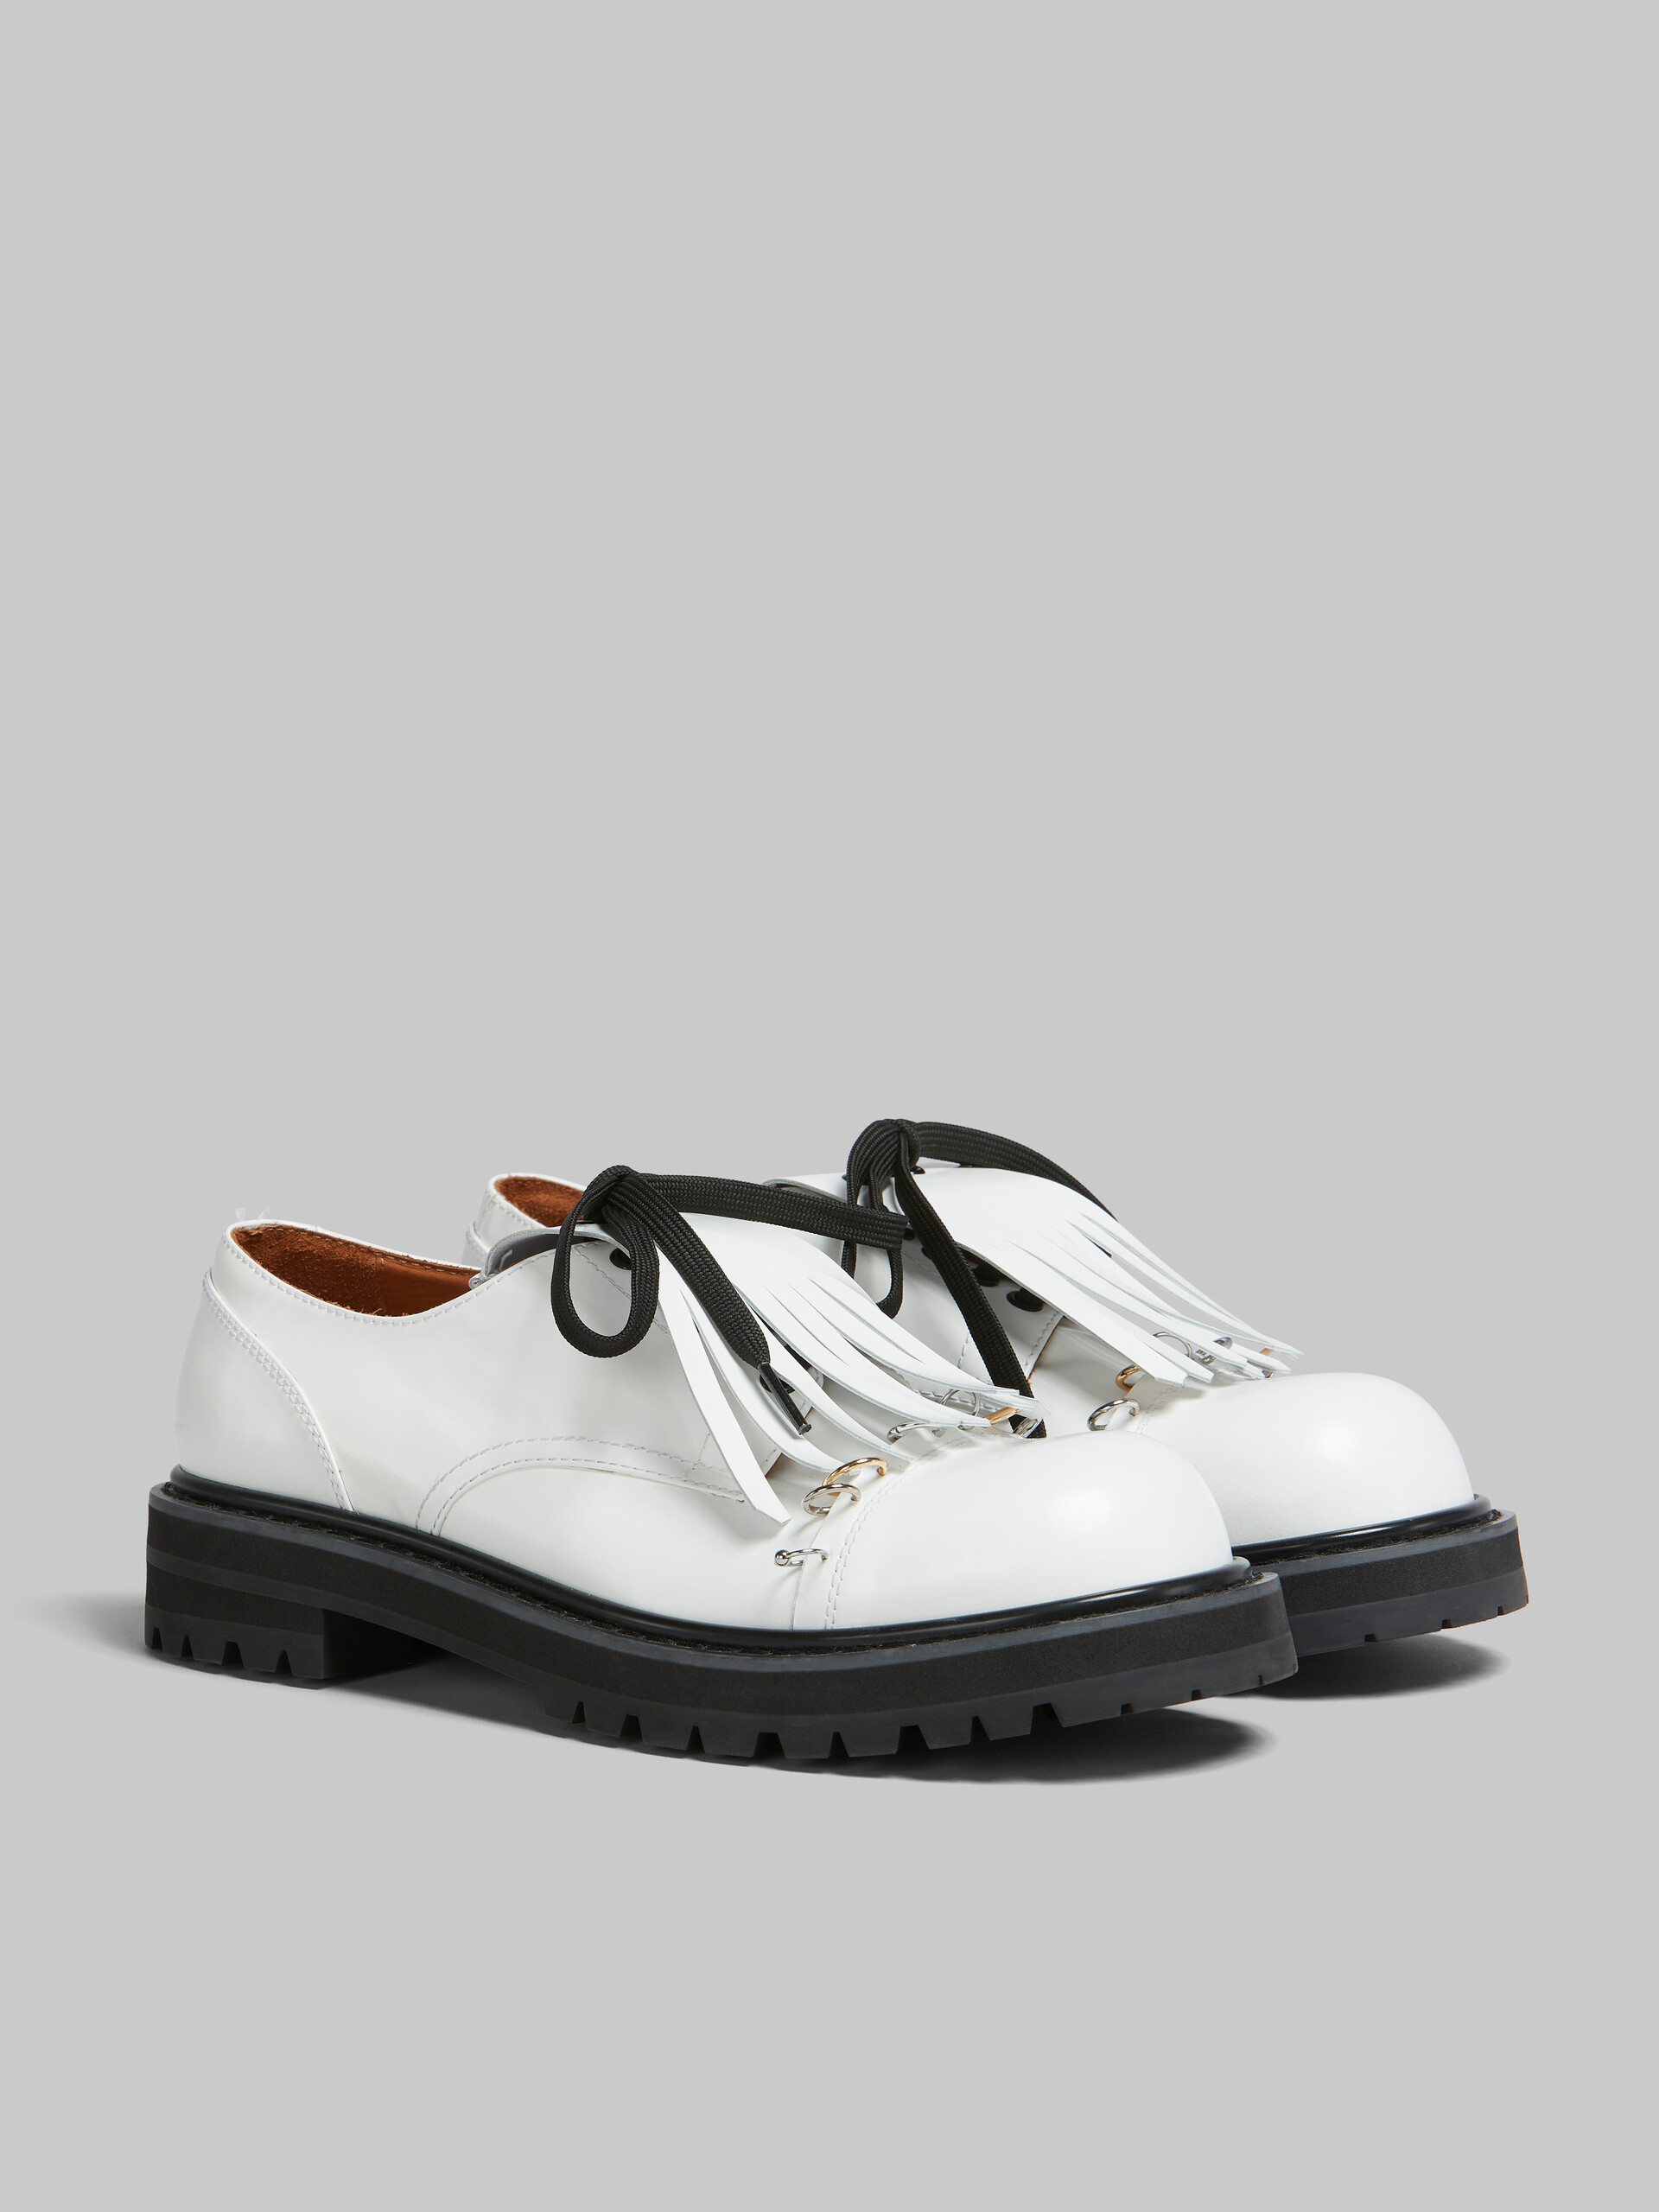 Chaussures derby Dada en cuir noir avec frange oversize - Chaussures à Lacets - Image 2